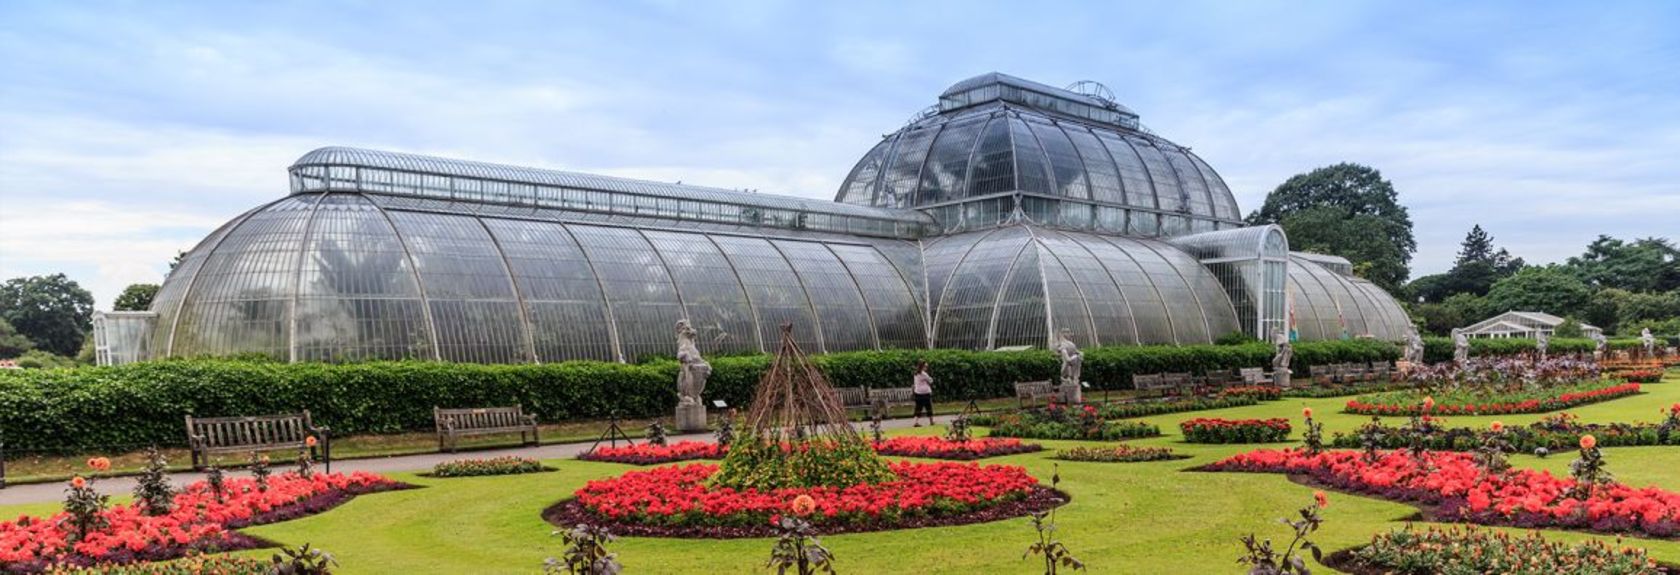 A sudoeste de Londres, a cerca de 12 quilômetros do centro da cidade, estão os magníficos jardins botânicos reais do Kew Palace & Gardens